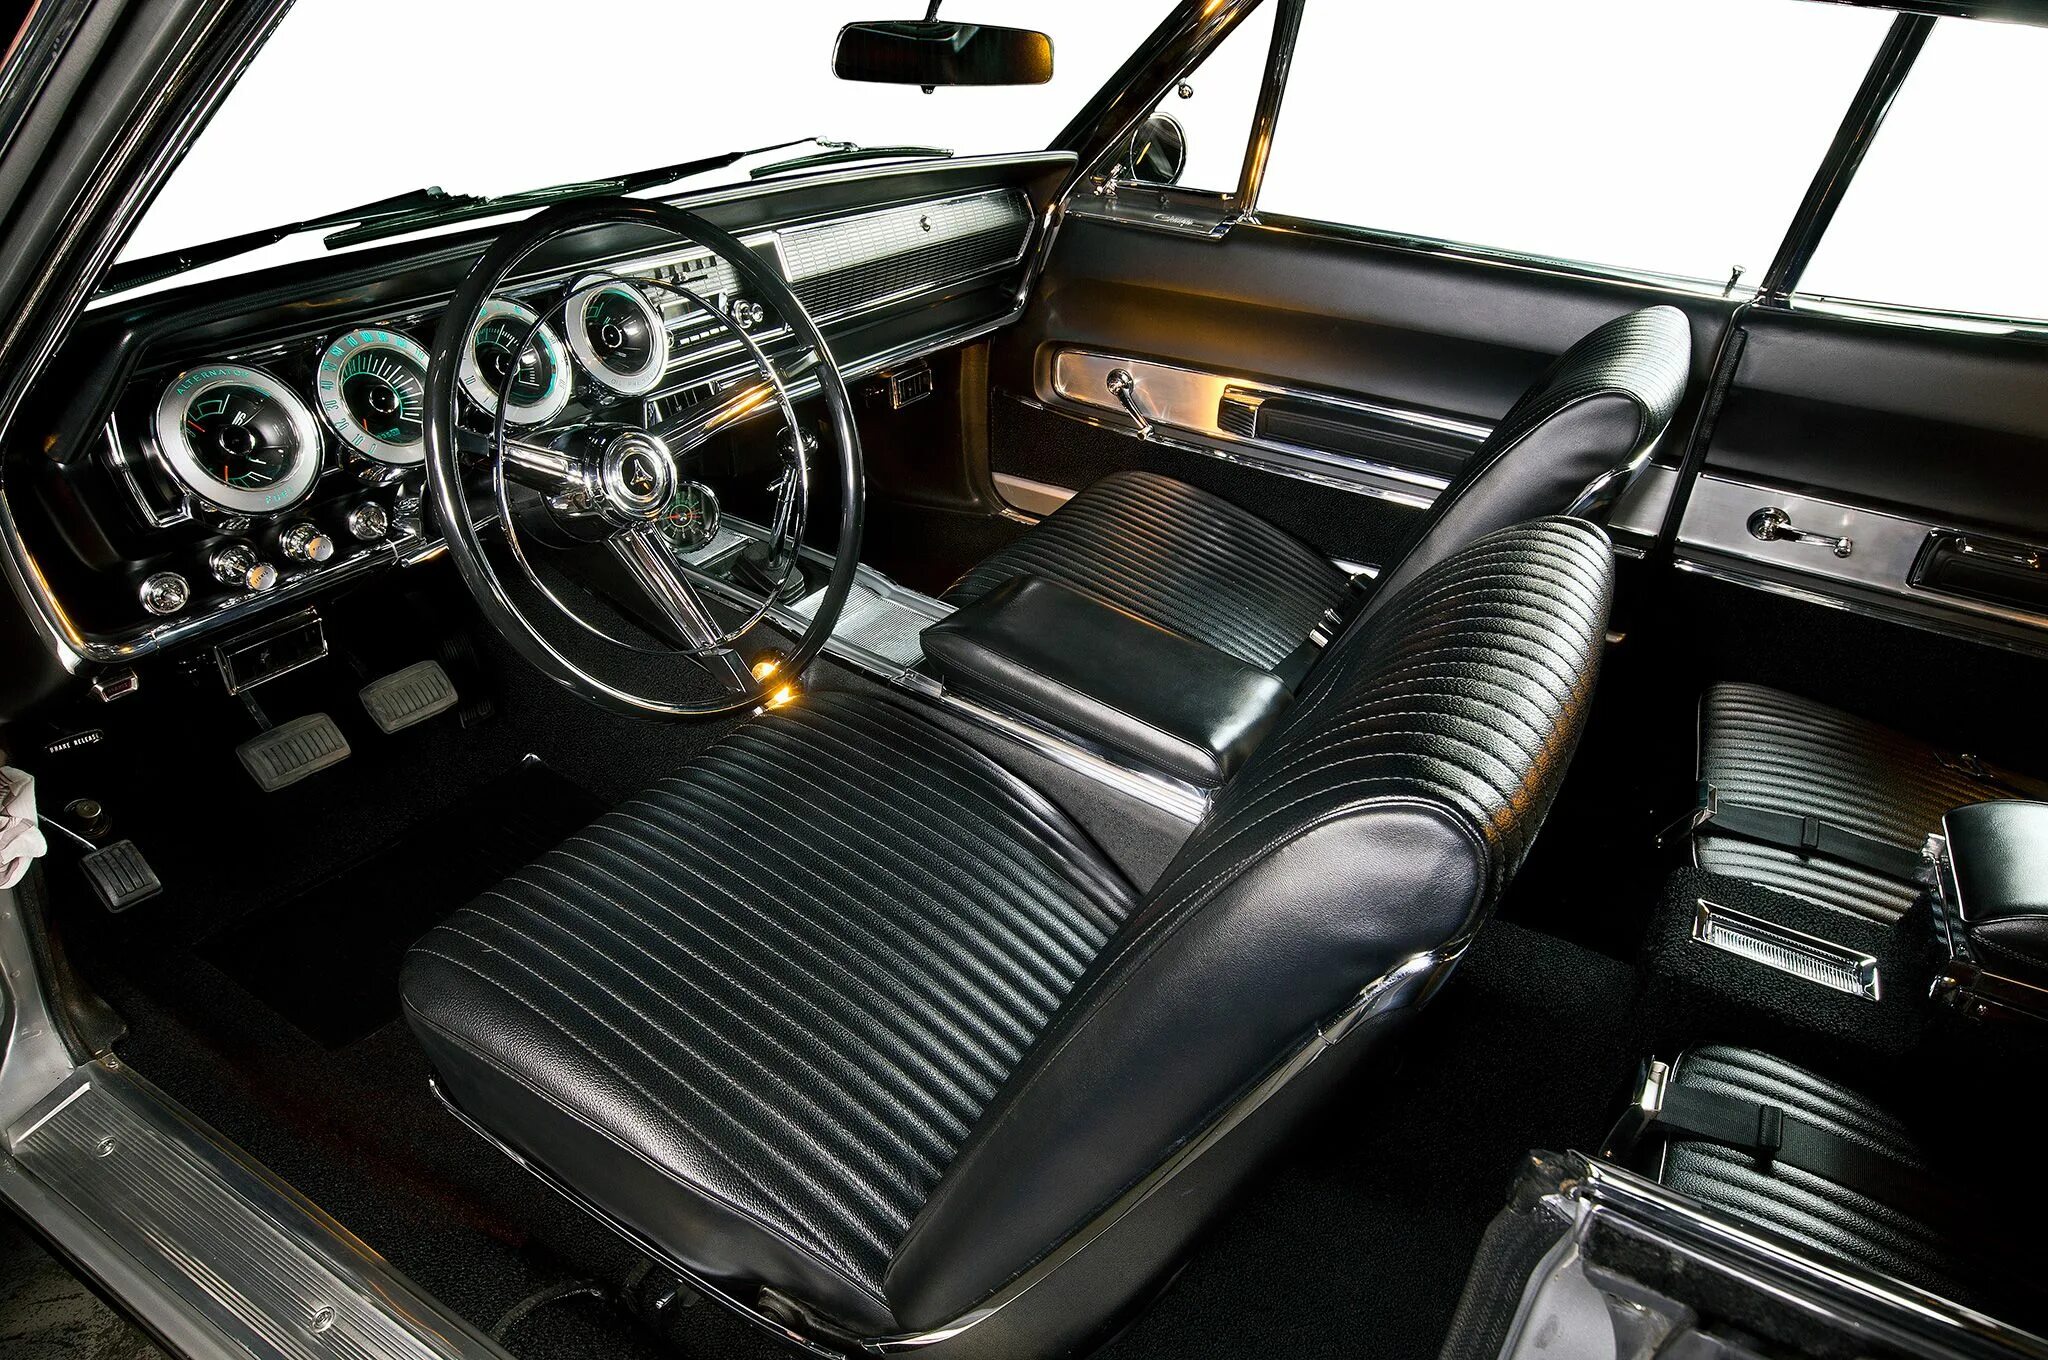 Торпеда классика. Dodge Charger 1969 салон. Додж Чарджер 1966 салон. Dodge Charger 1966 салон. Додж Чарджер 1969 салон.